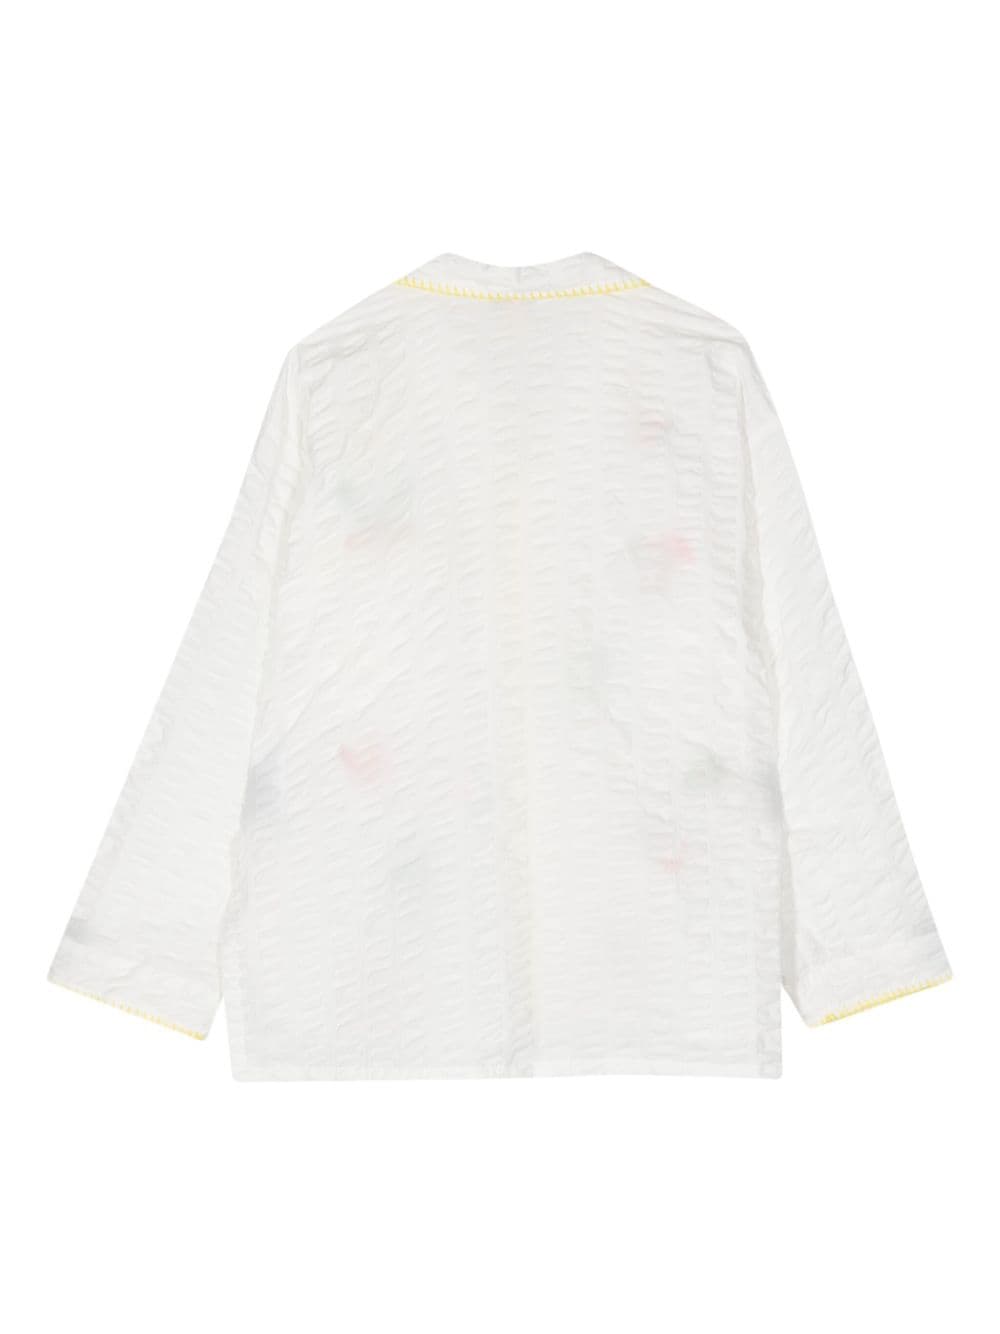 Mira Mikati embroidered cotton shirt - Wit